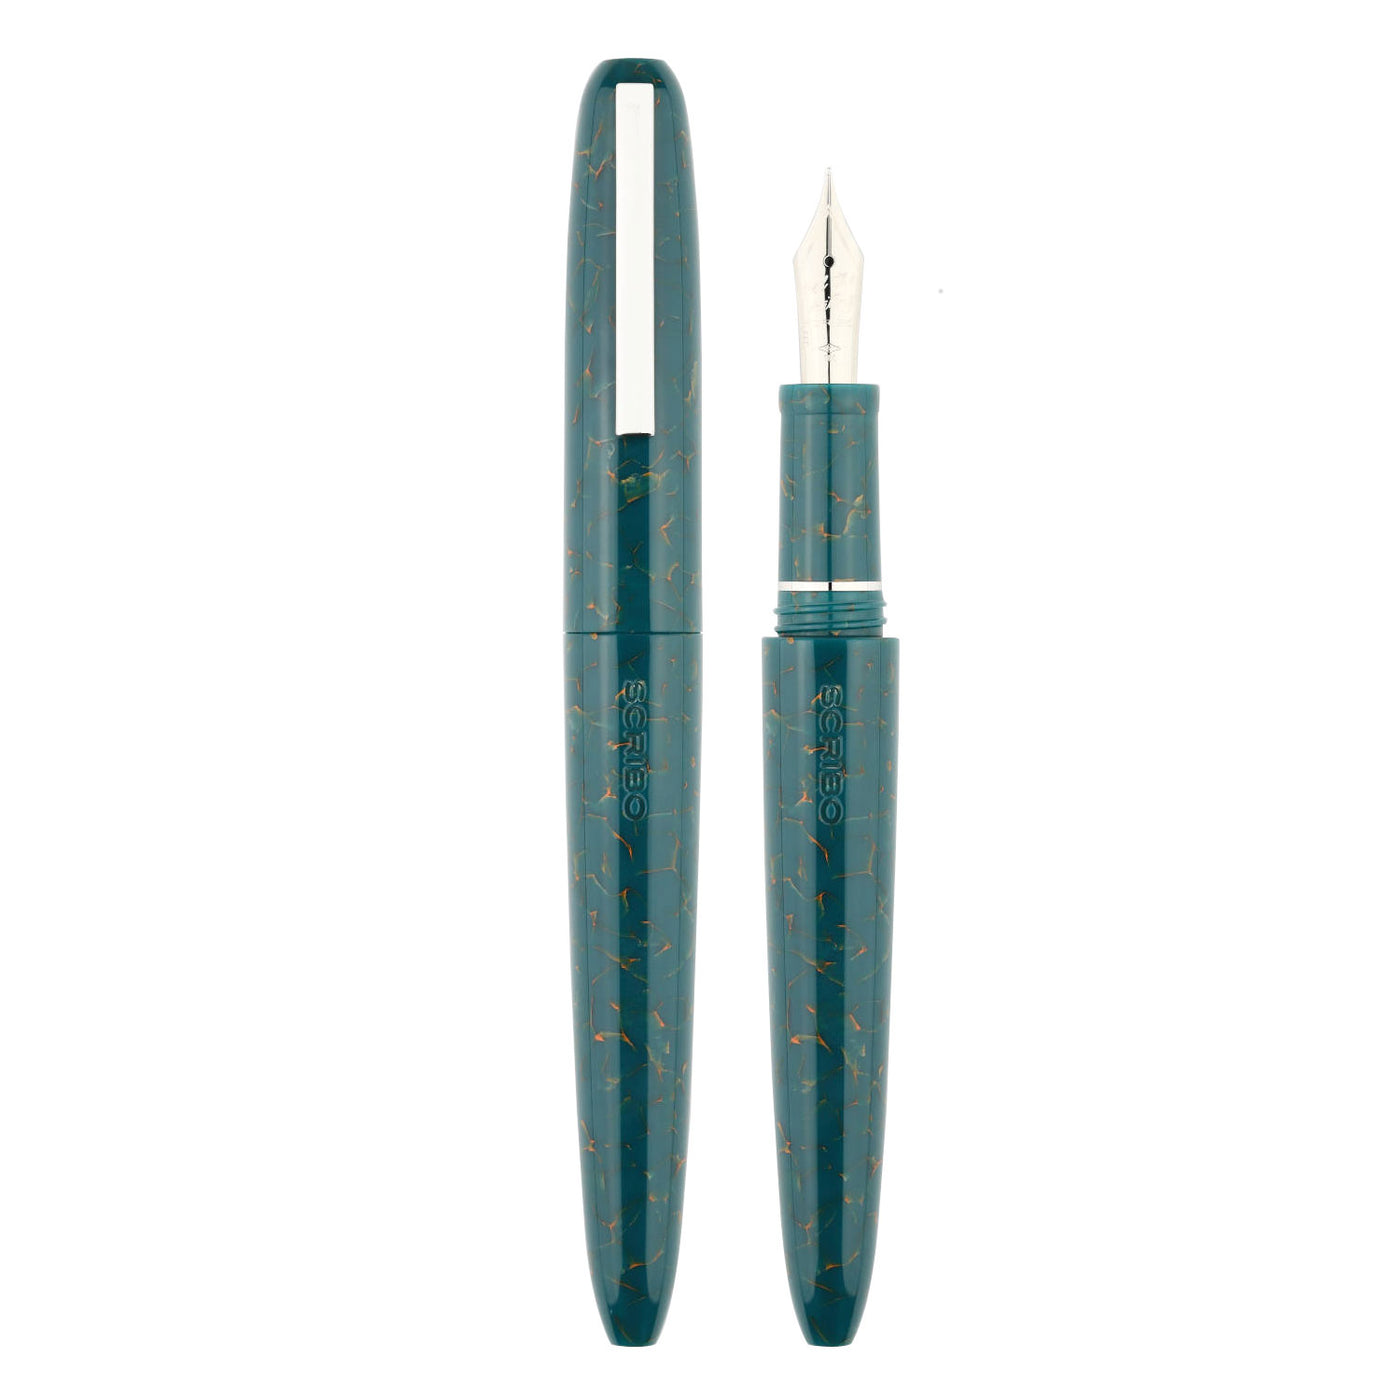 Scribo Piuma Fountain Pen - Impressione (Limited Edition) 2